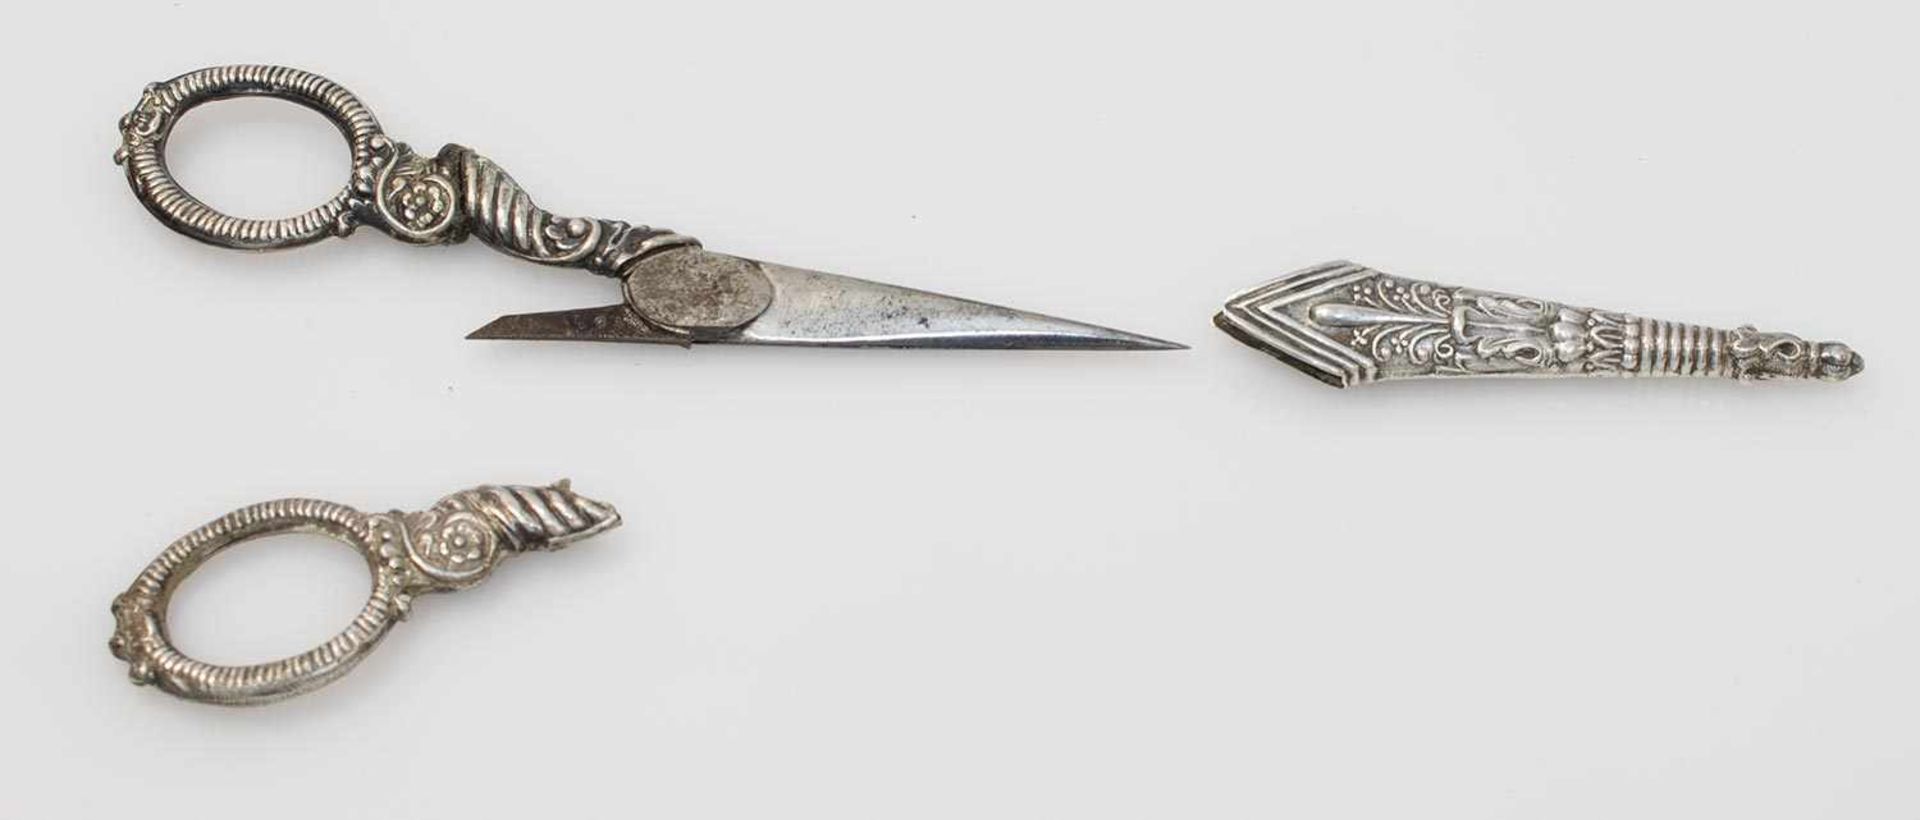 Handarbeitsschere um 1800, Silber (ungest./gepr.), getriebenes Etui, 1 Griff gebrochen, L. 10,5 cm